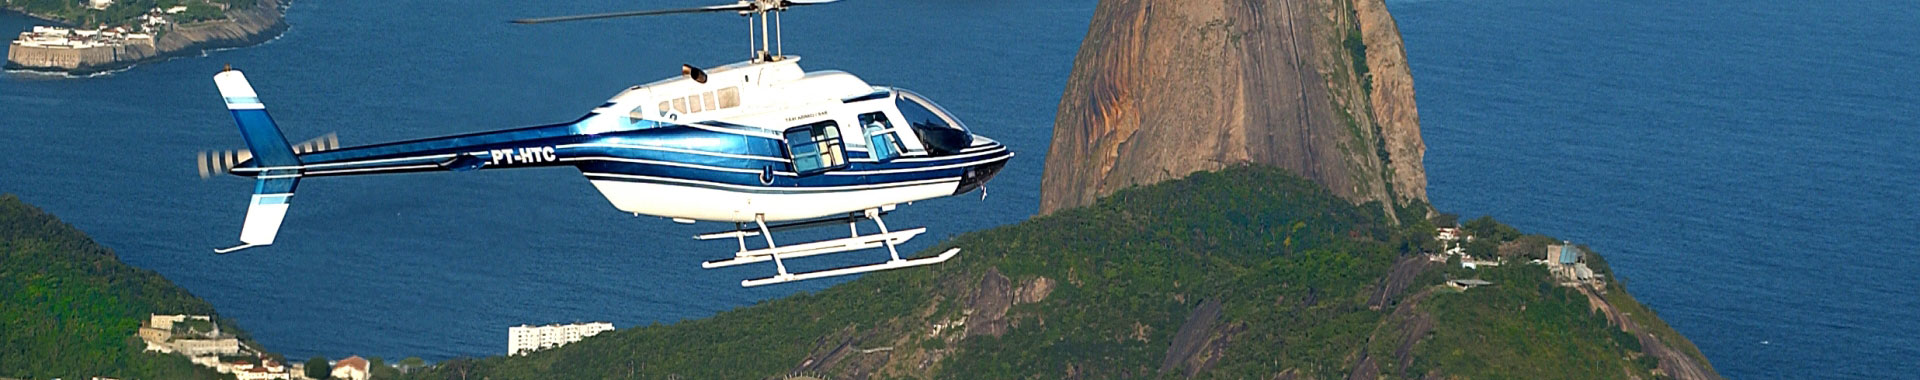 Brasil - Rio - Paseos - Helicoptero